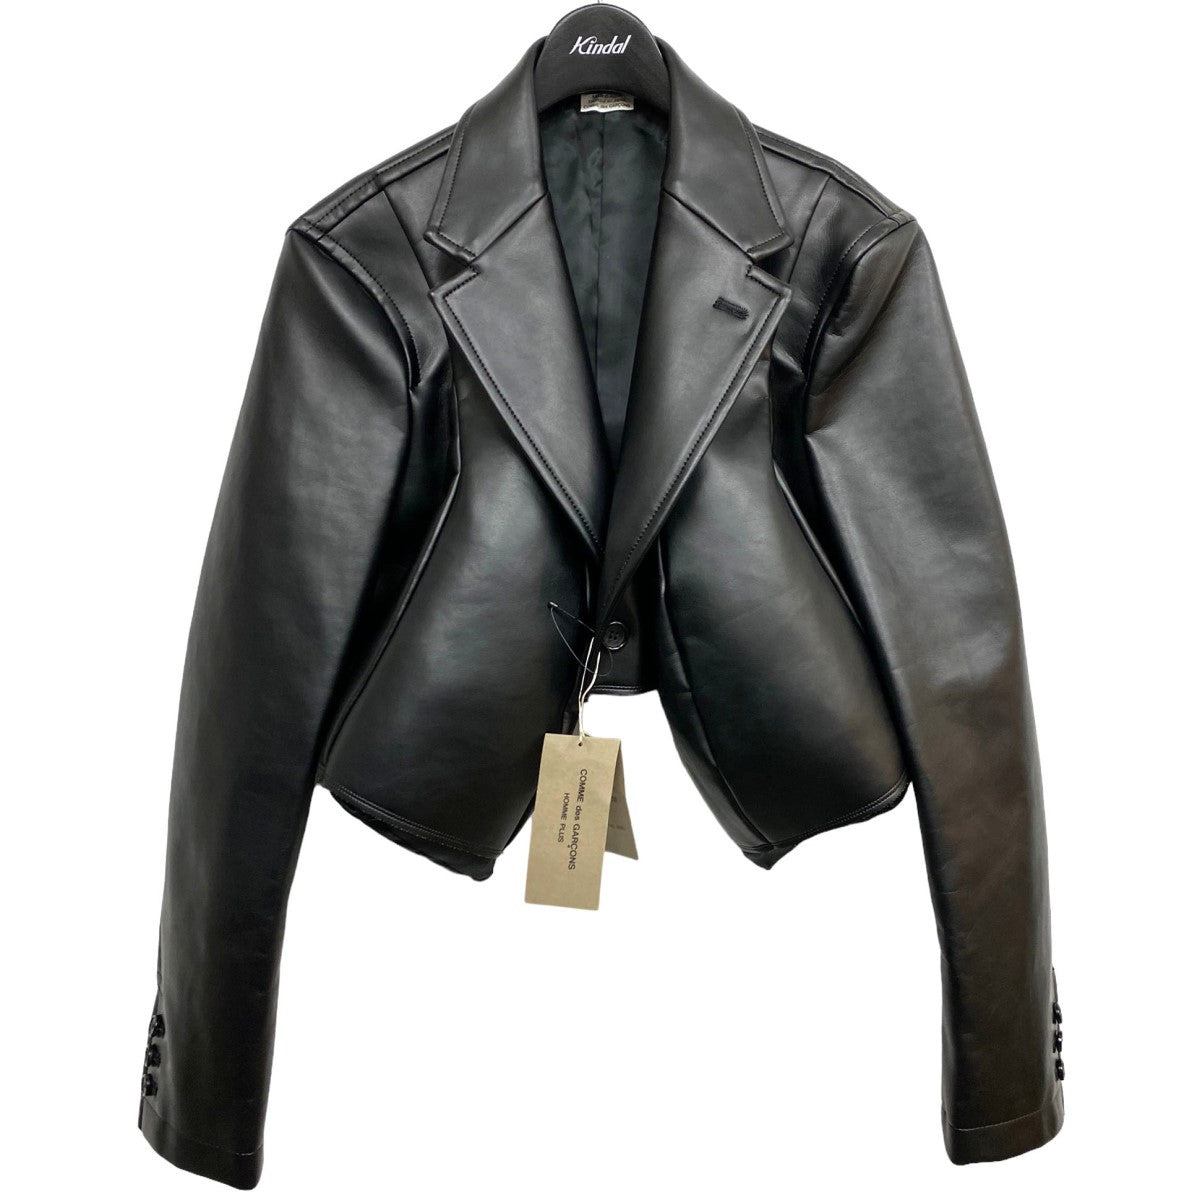 Comme des Garçons 23AW デザインジャケット¥41500はいかがでしょうか